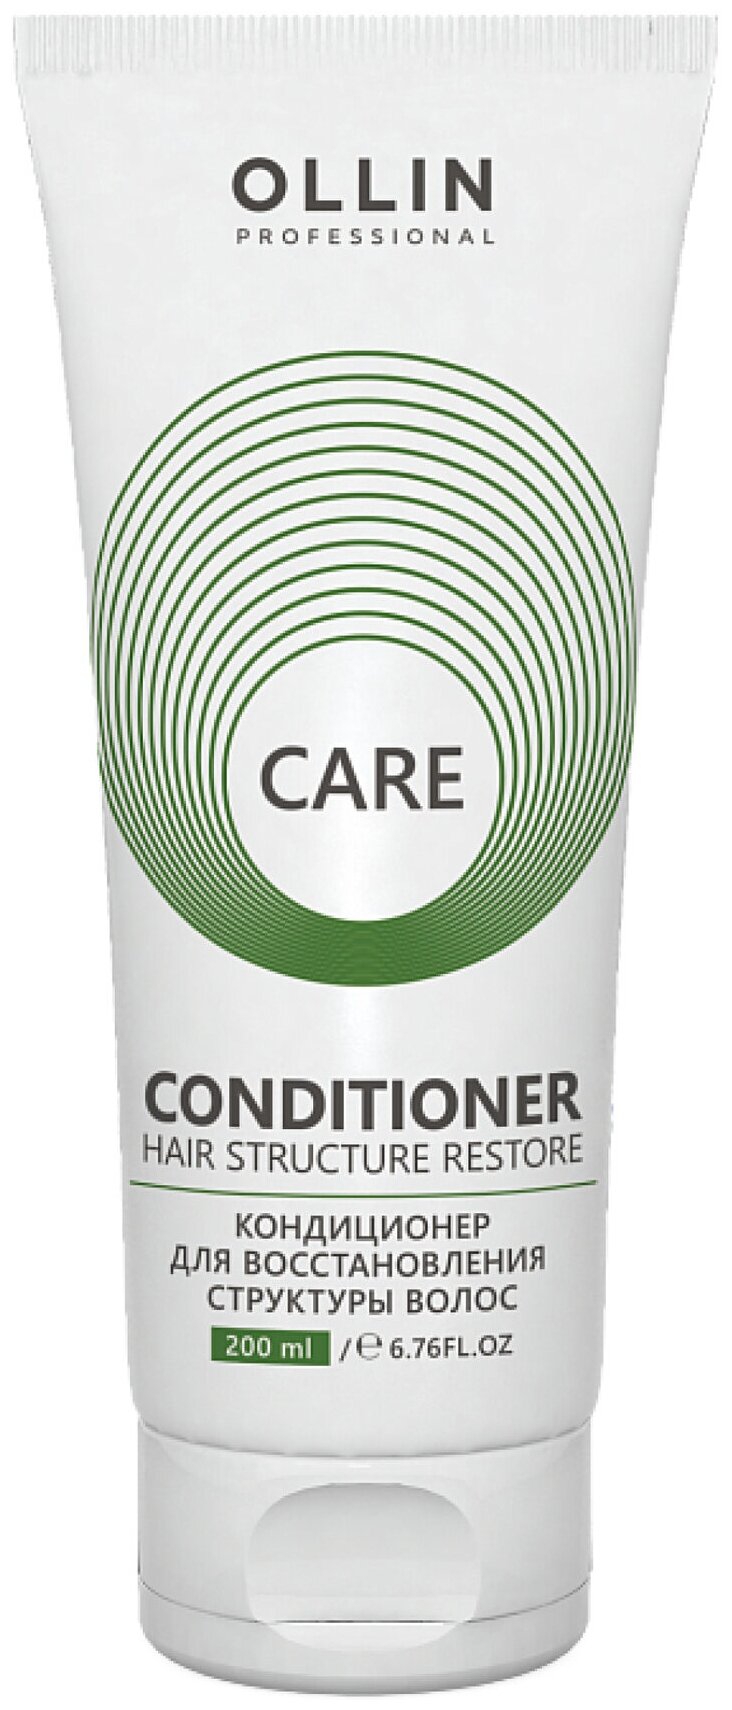 OLLIN Professional кондиционер для восстановления структуры волос Care Restore